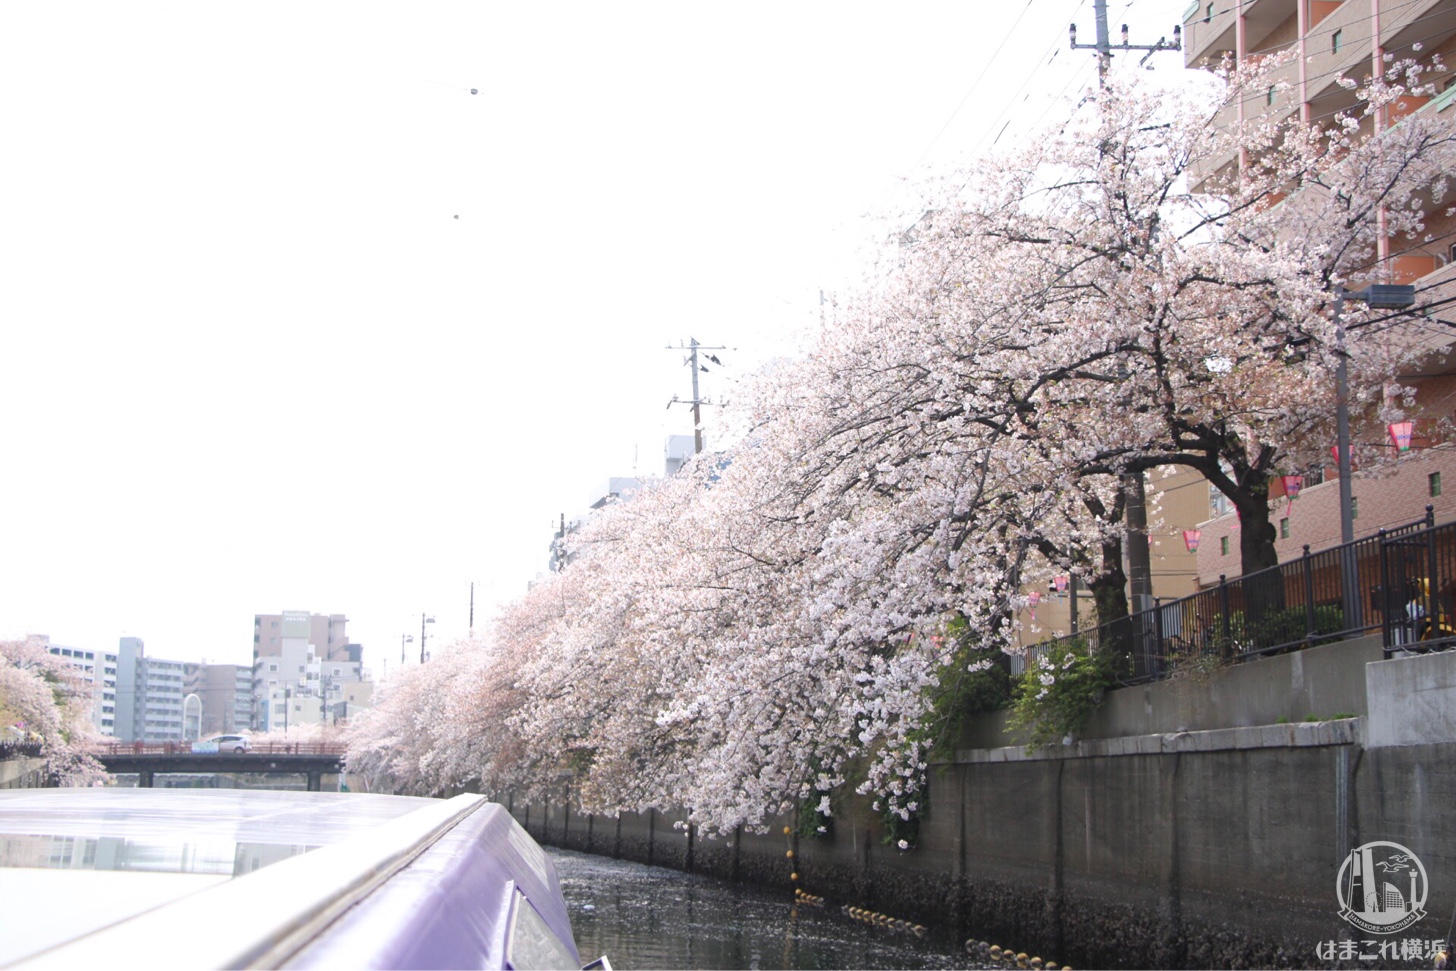 橋をくぐった先に待つ満開の桜